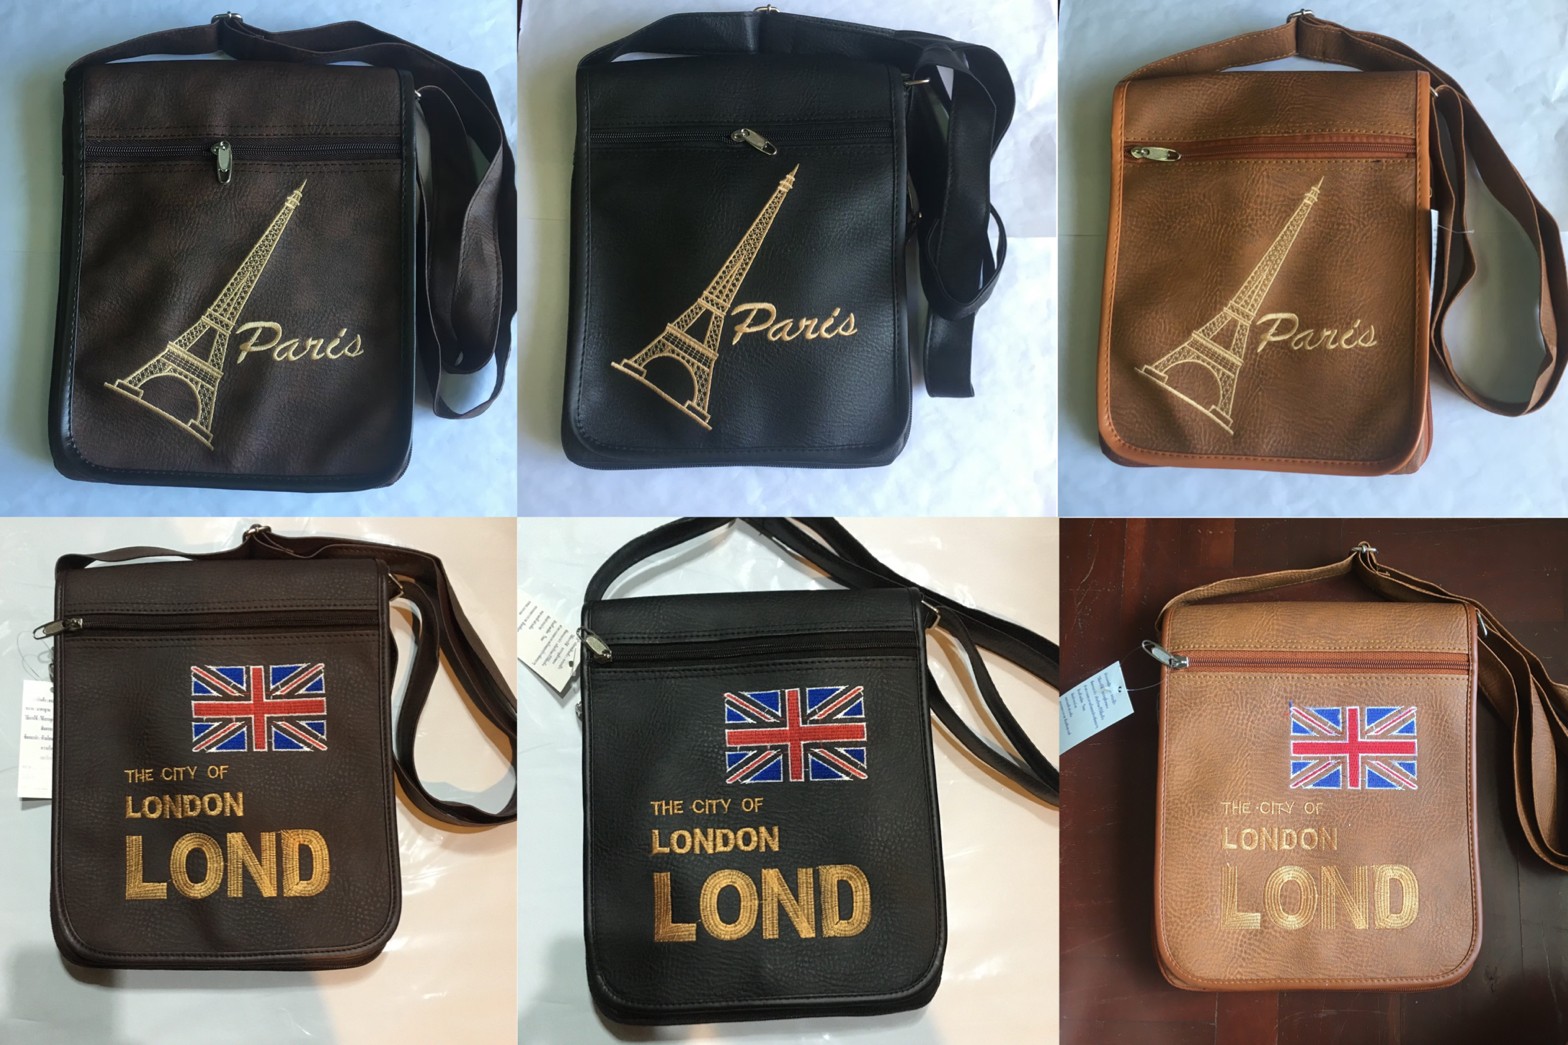 กระเป๋าสะพายข้าง LONDON / Paris กระเป๋าสะพายข้างแฟชั่น กระเป๋าสะพาข้างผู้ชาย กระเป๋าสะพายข้าง Paris ราคาถูก